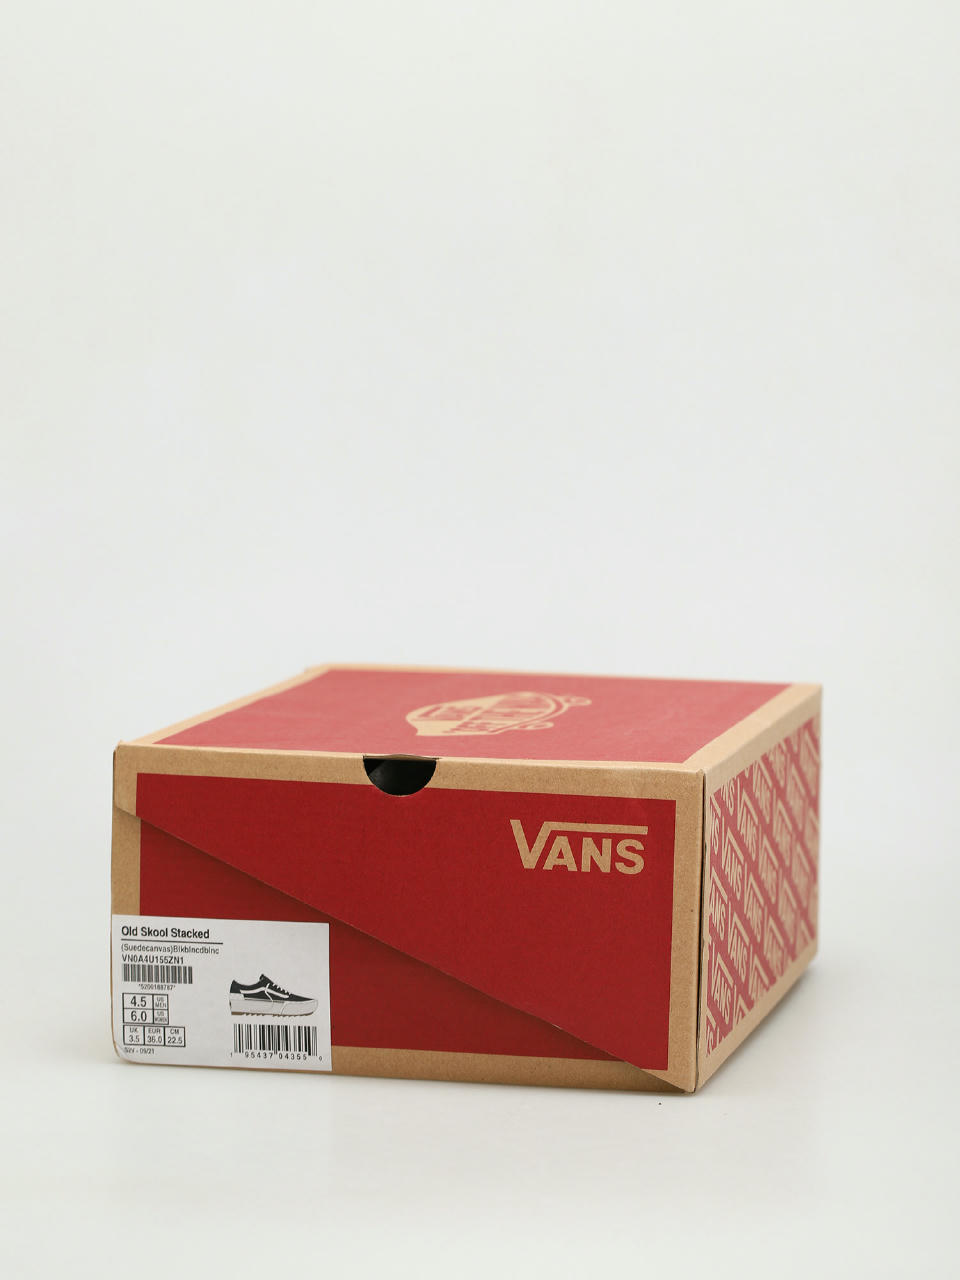 Vans Slip On Skate Shoes Packing Tape Blanc De Blanc Red